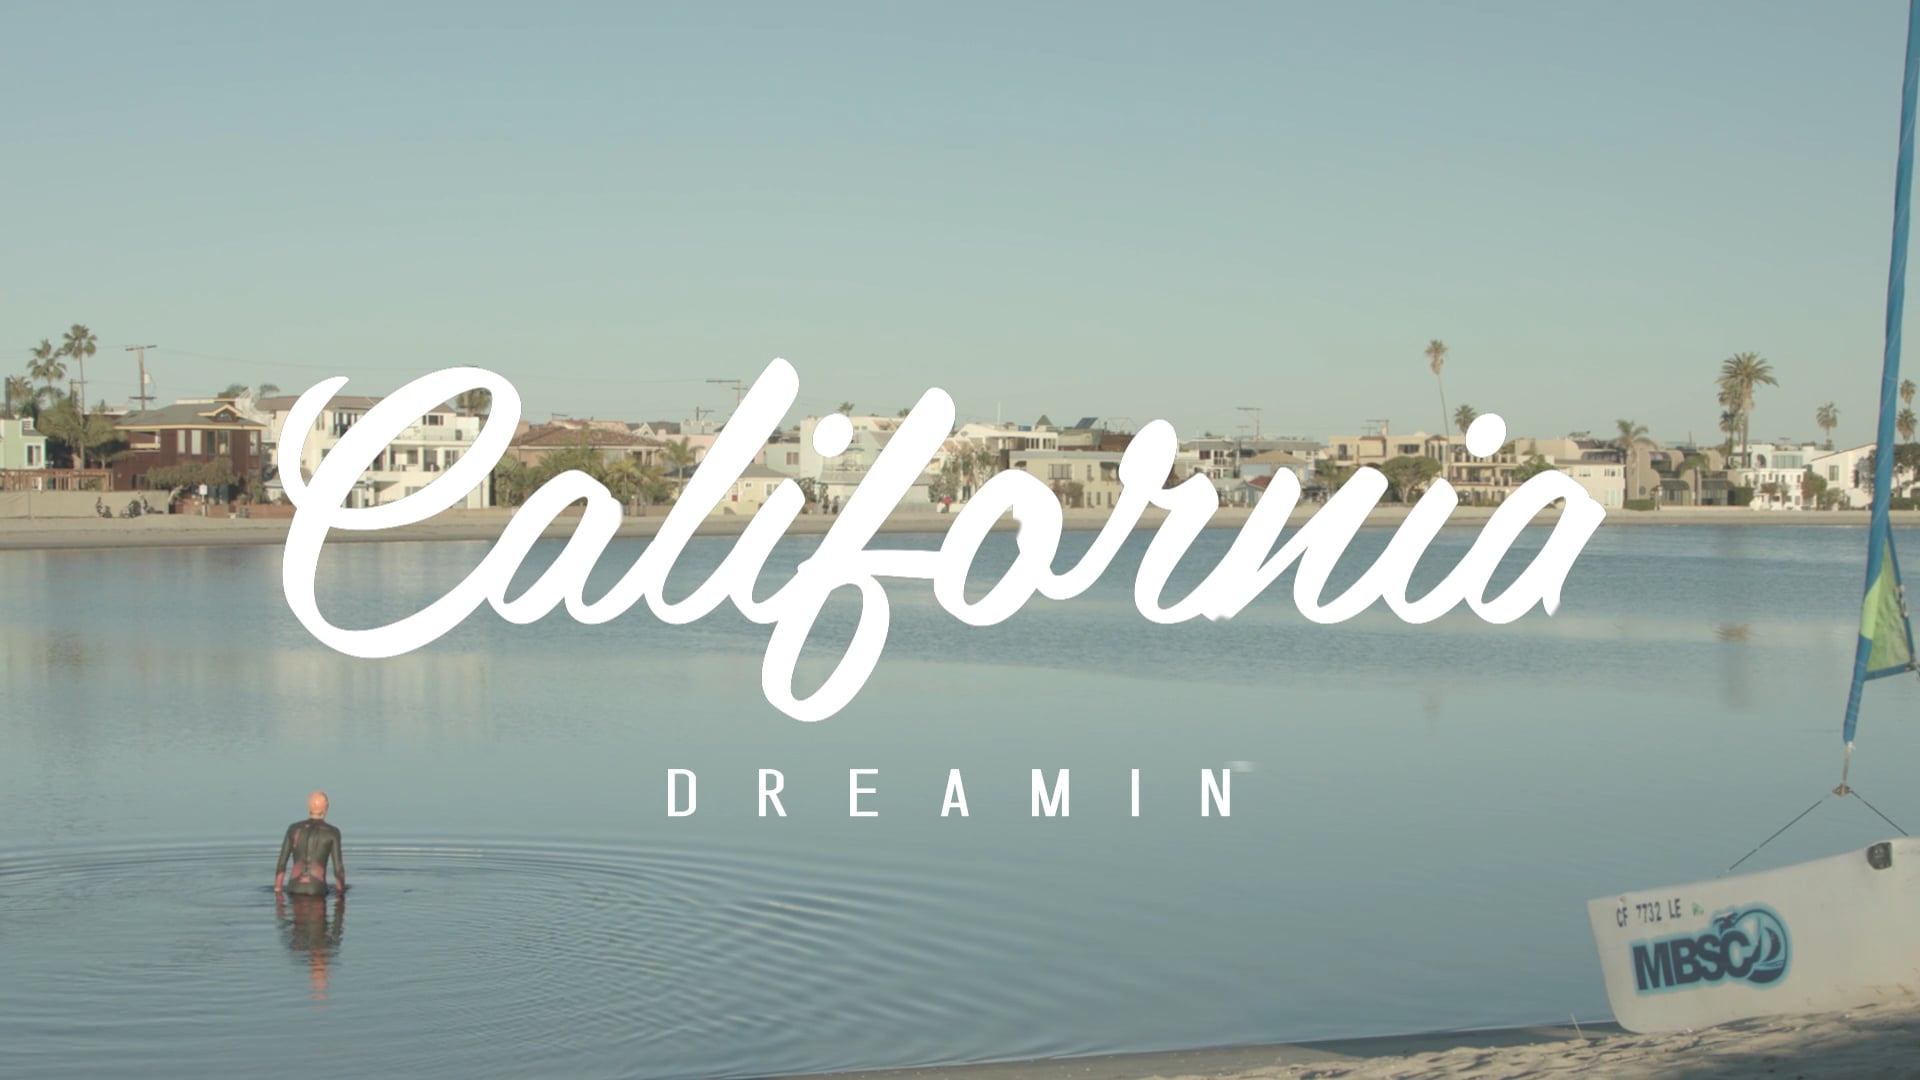 California Dreamin' - Mission bay - San Diego